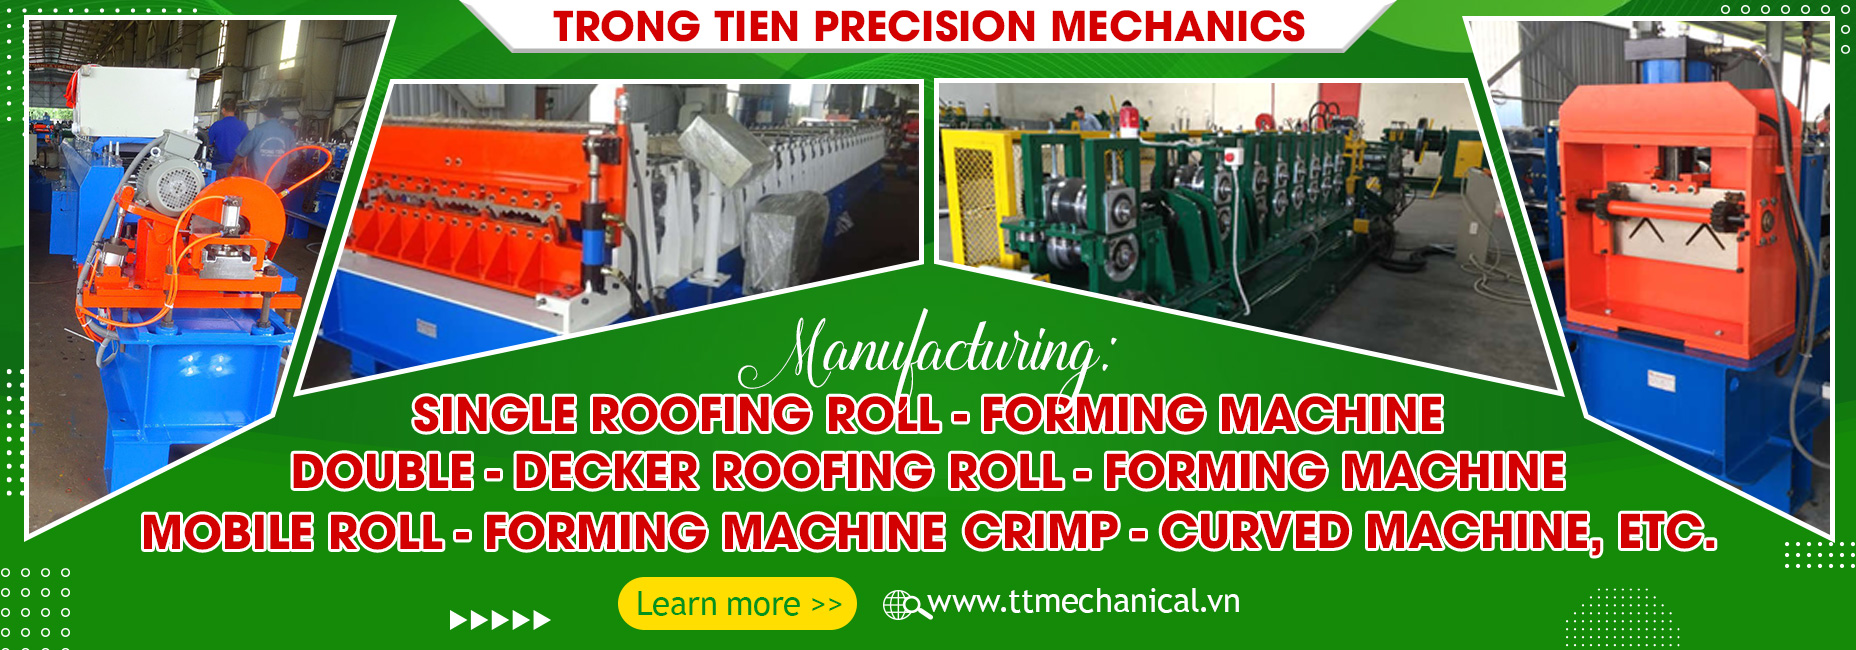 Trong Tien Precision Mechanical Co., Ltd